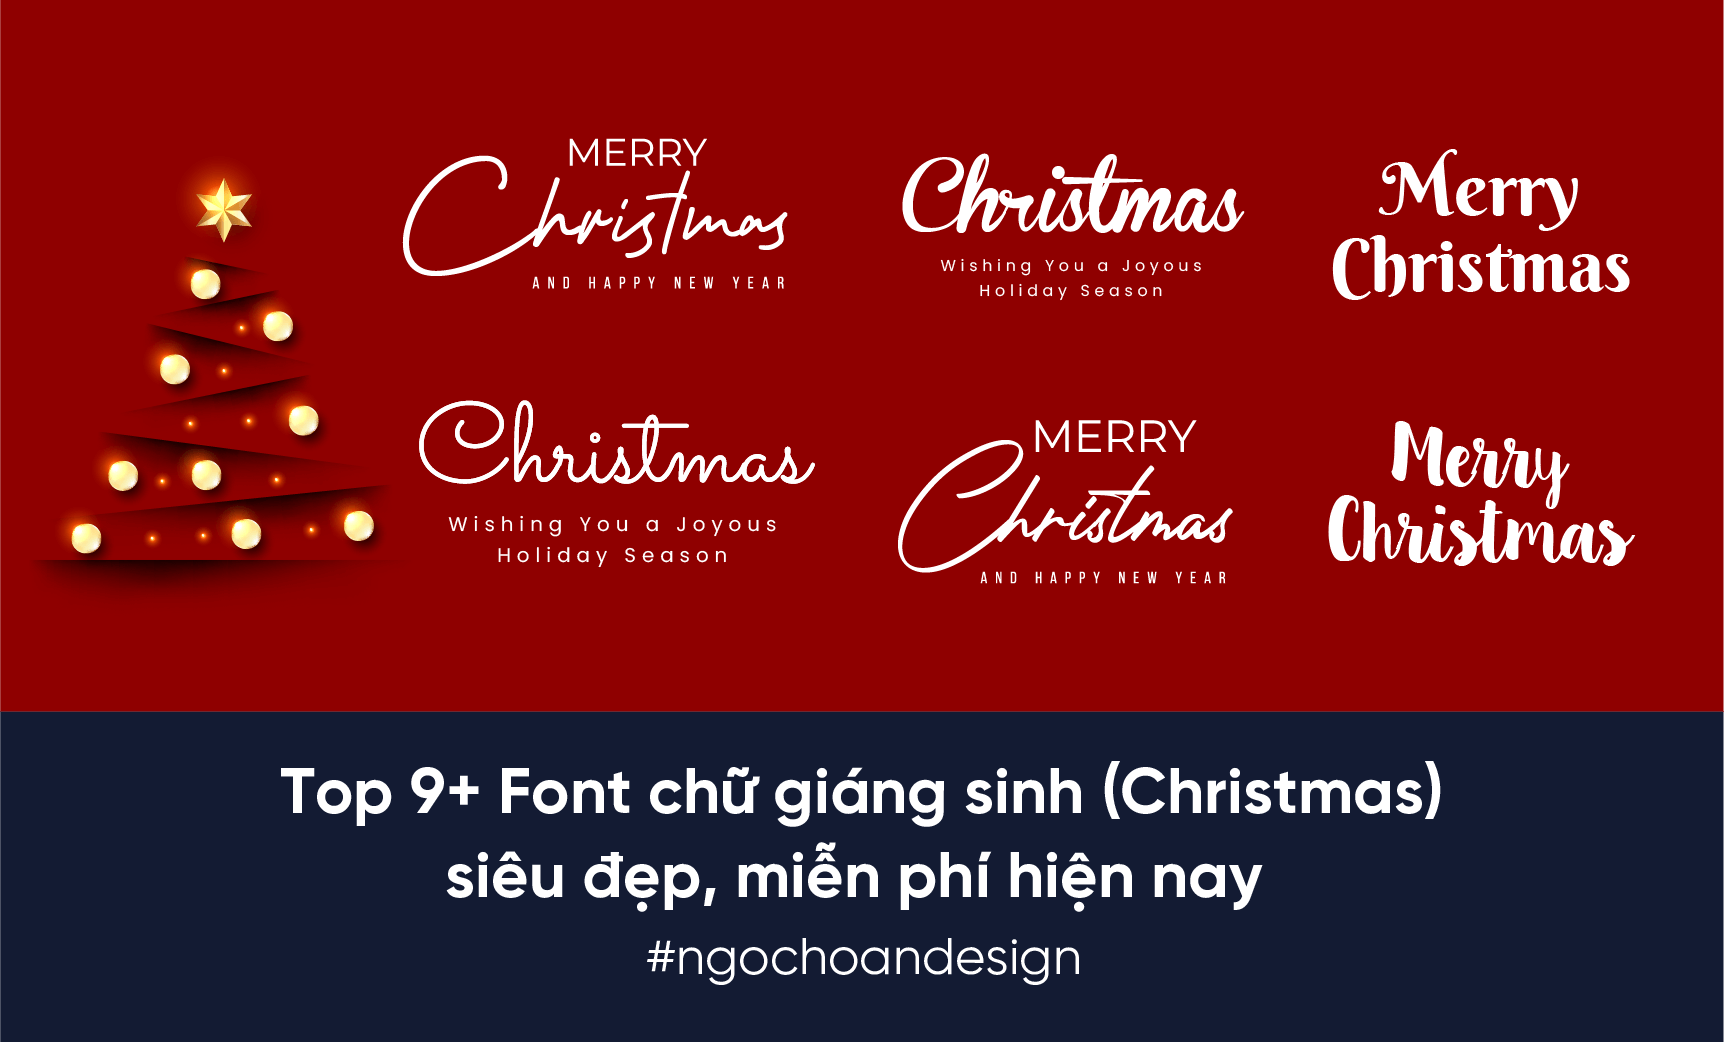 Top 9+ Font chữ giáng sinh (Christmas) đẹp, miễn phí